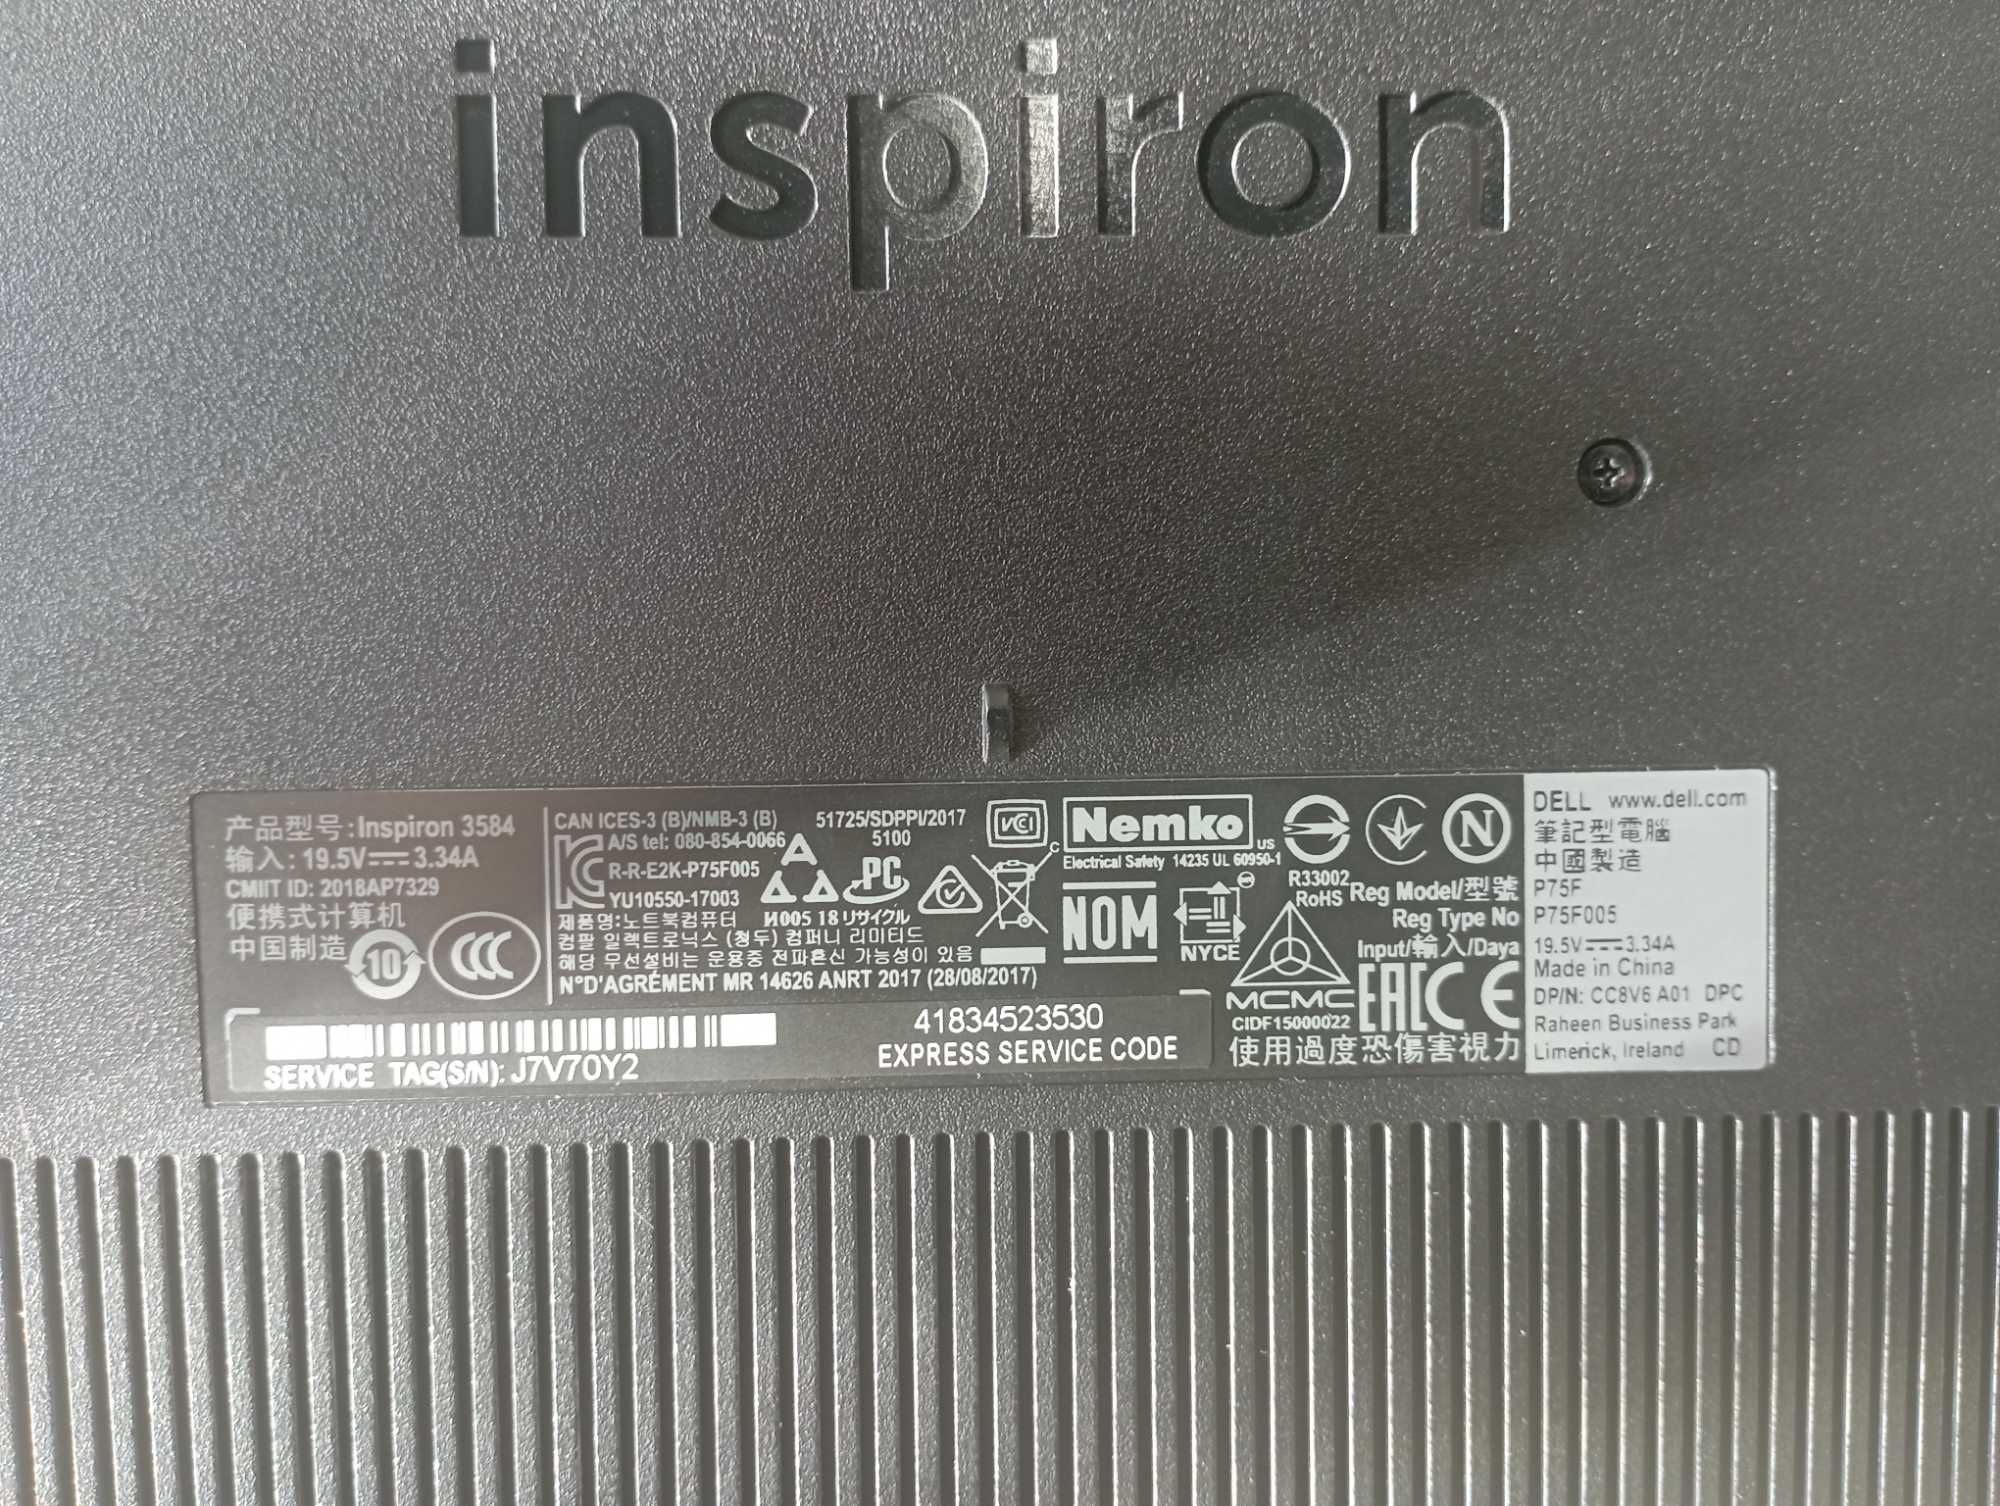 Dell Inspiron 3584